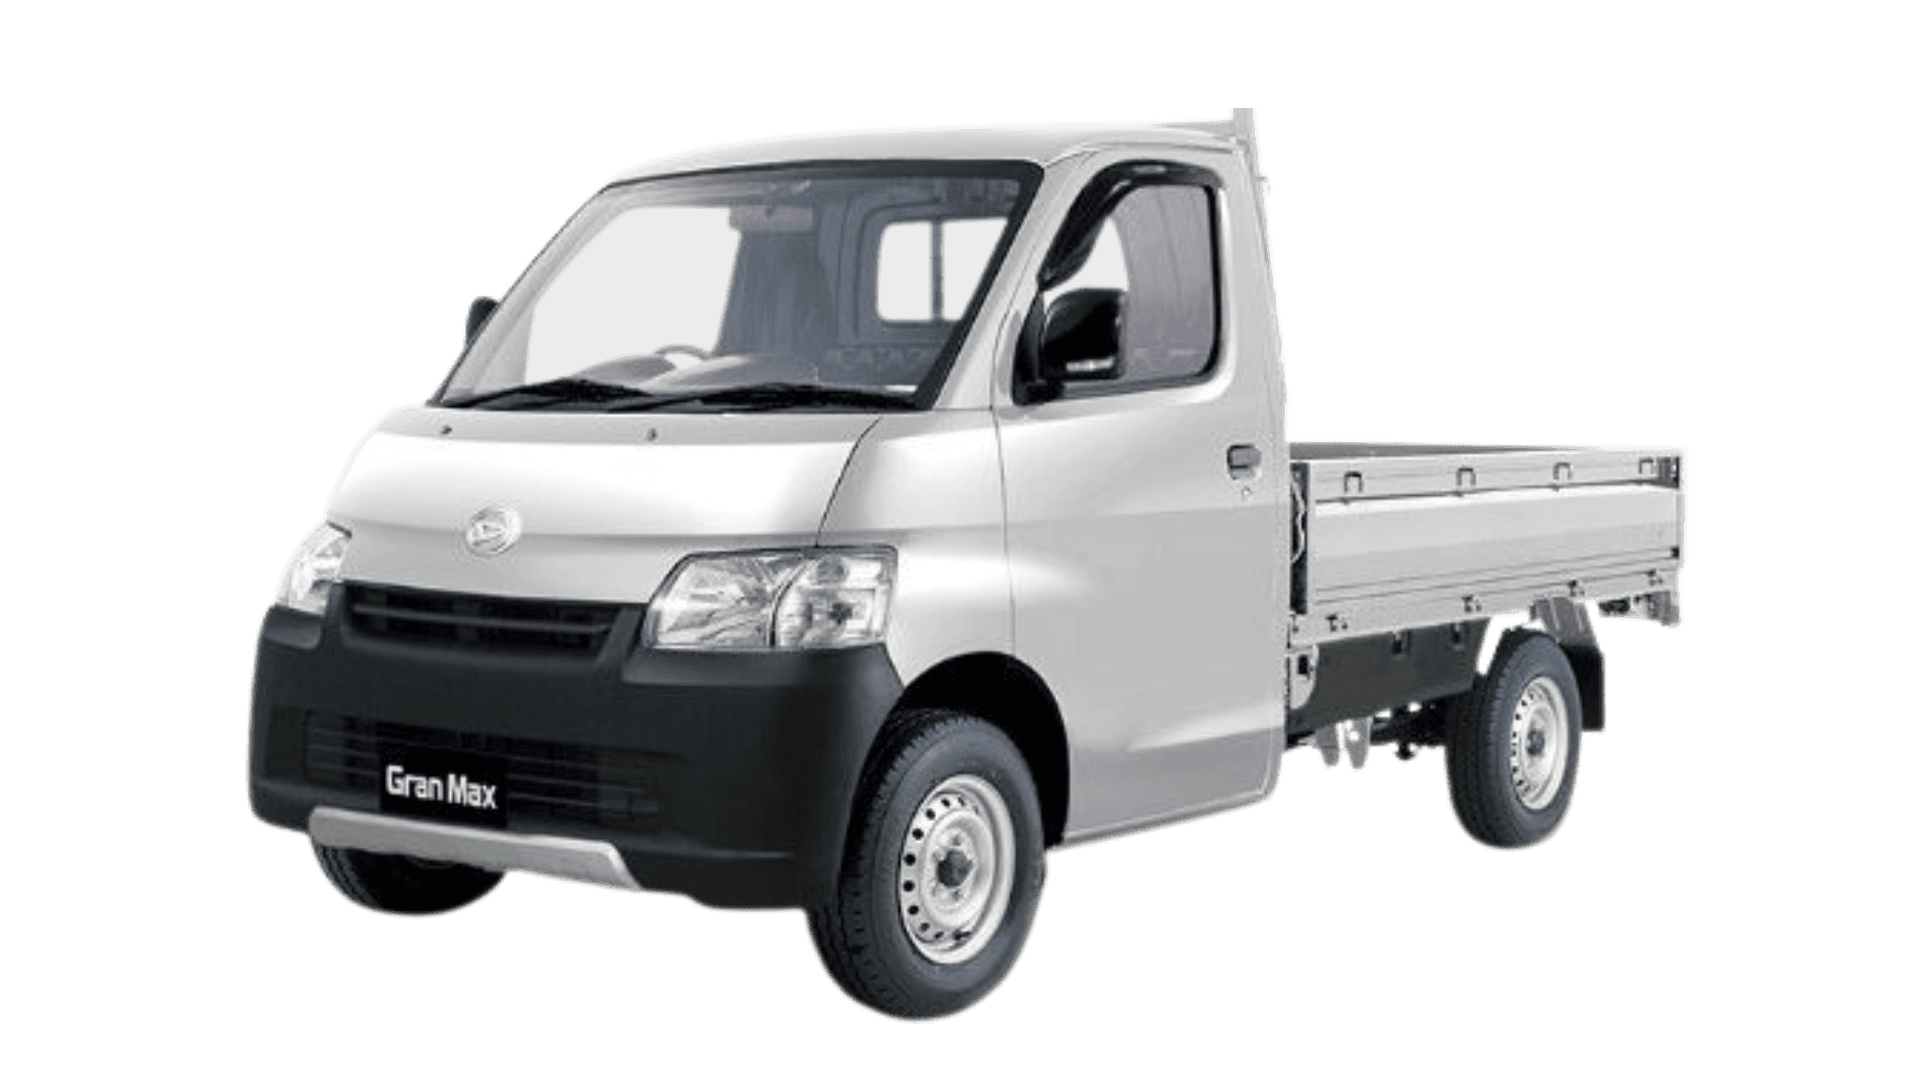 TRAC - Commercial Car - Daihatsu Granmax PU.png